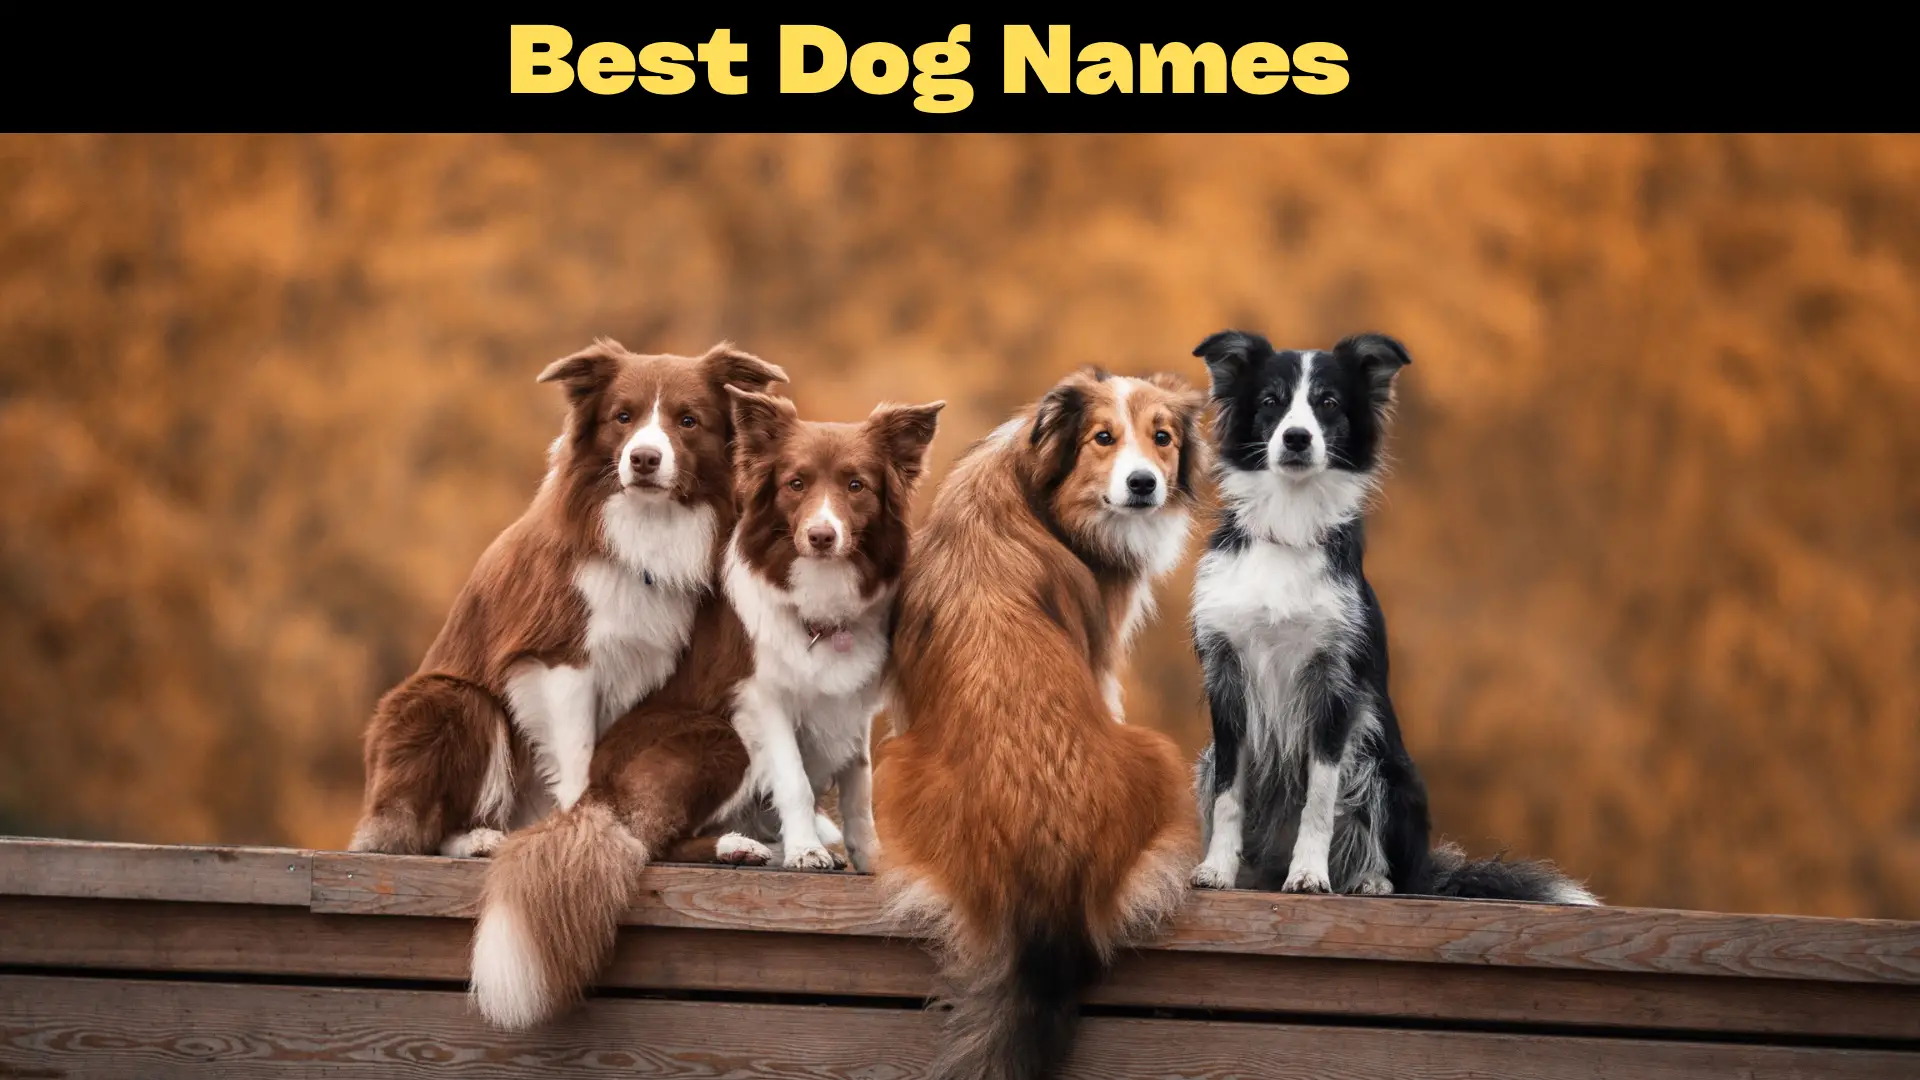 Best Dog Names